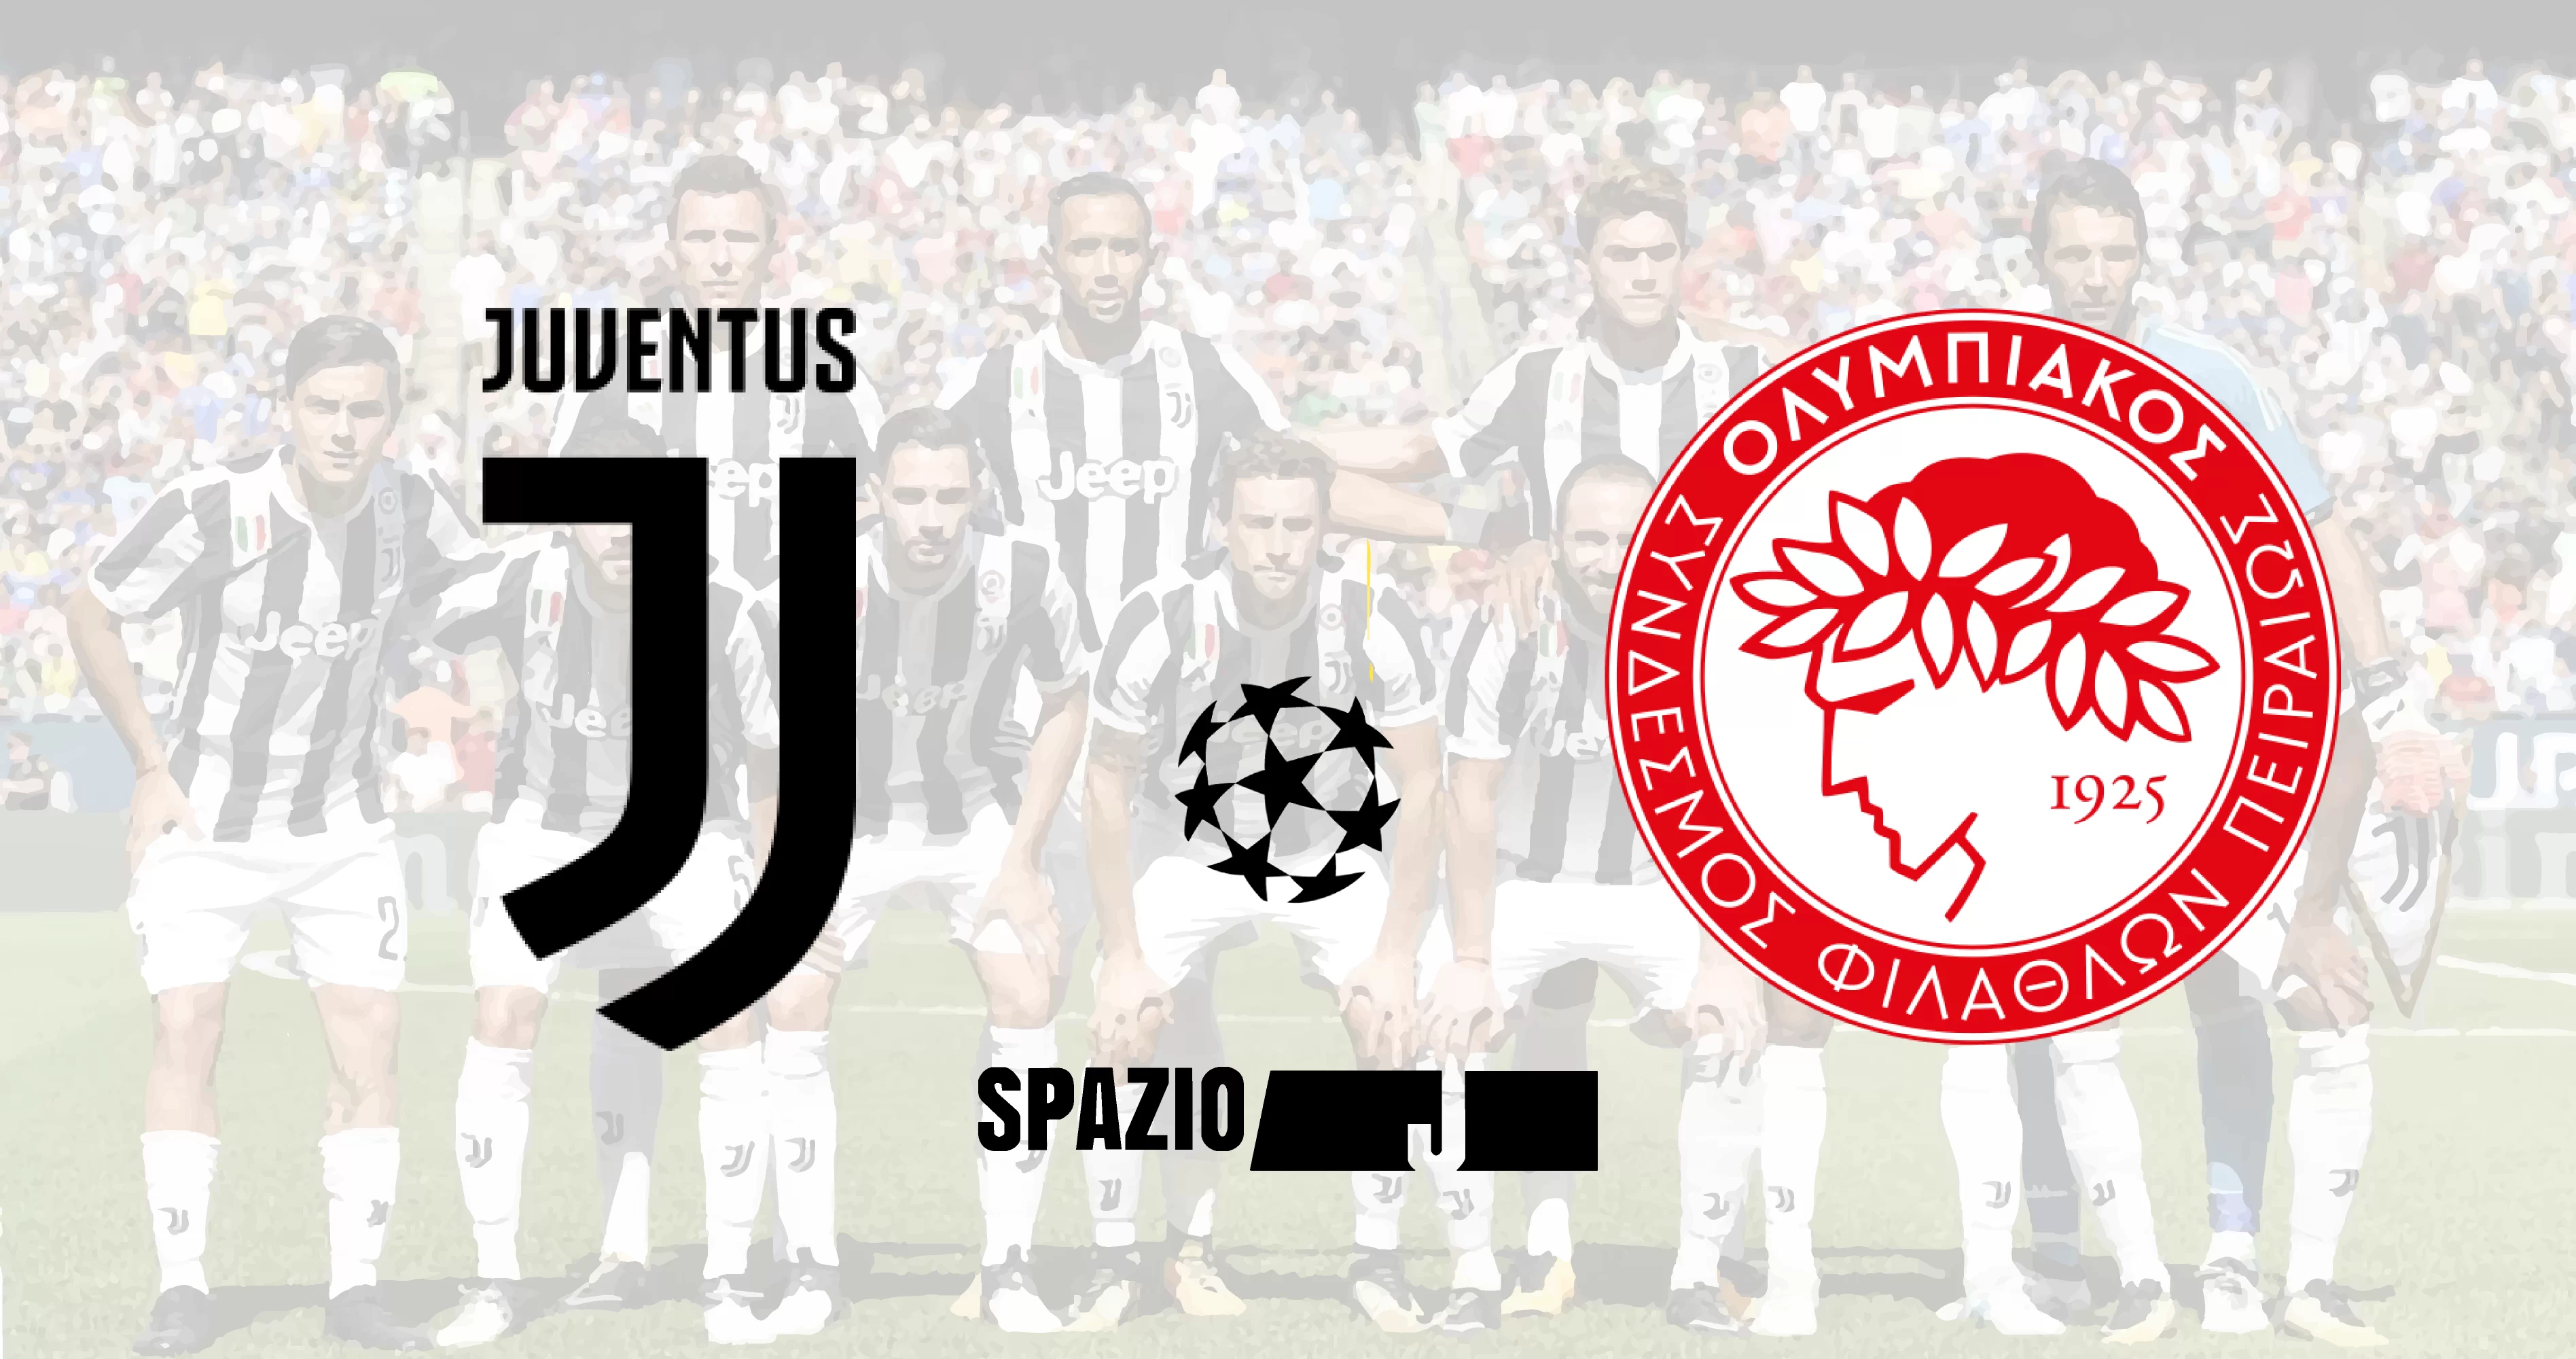 Verso Juventus-Olympiakos: clamorose indiscrezioni sull’attacco bianconero! Barzagli e Chiellini nella retroguardia